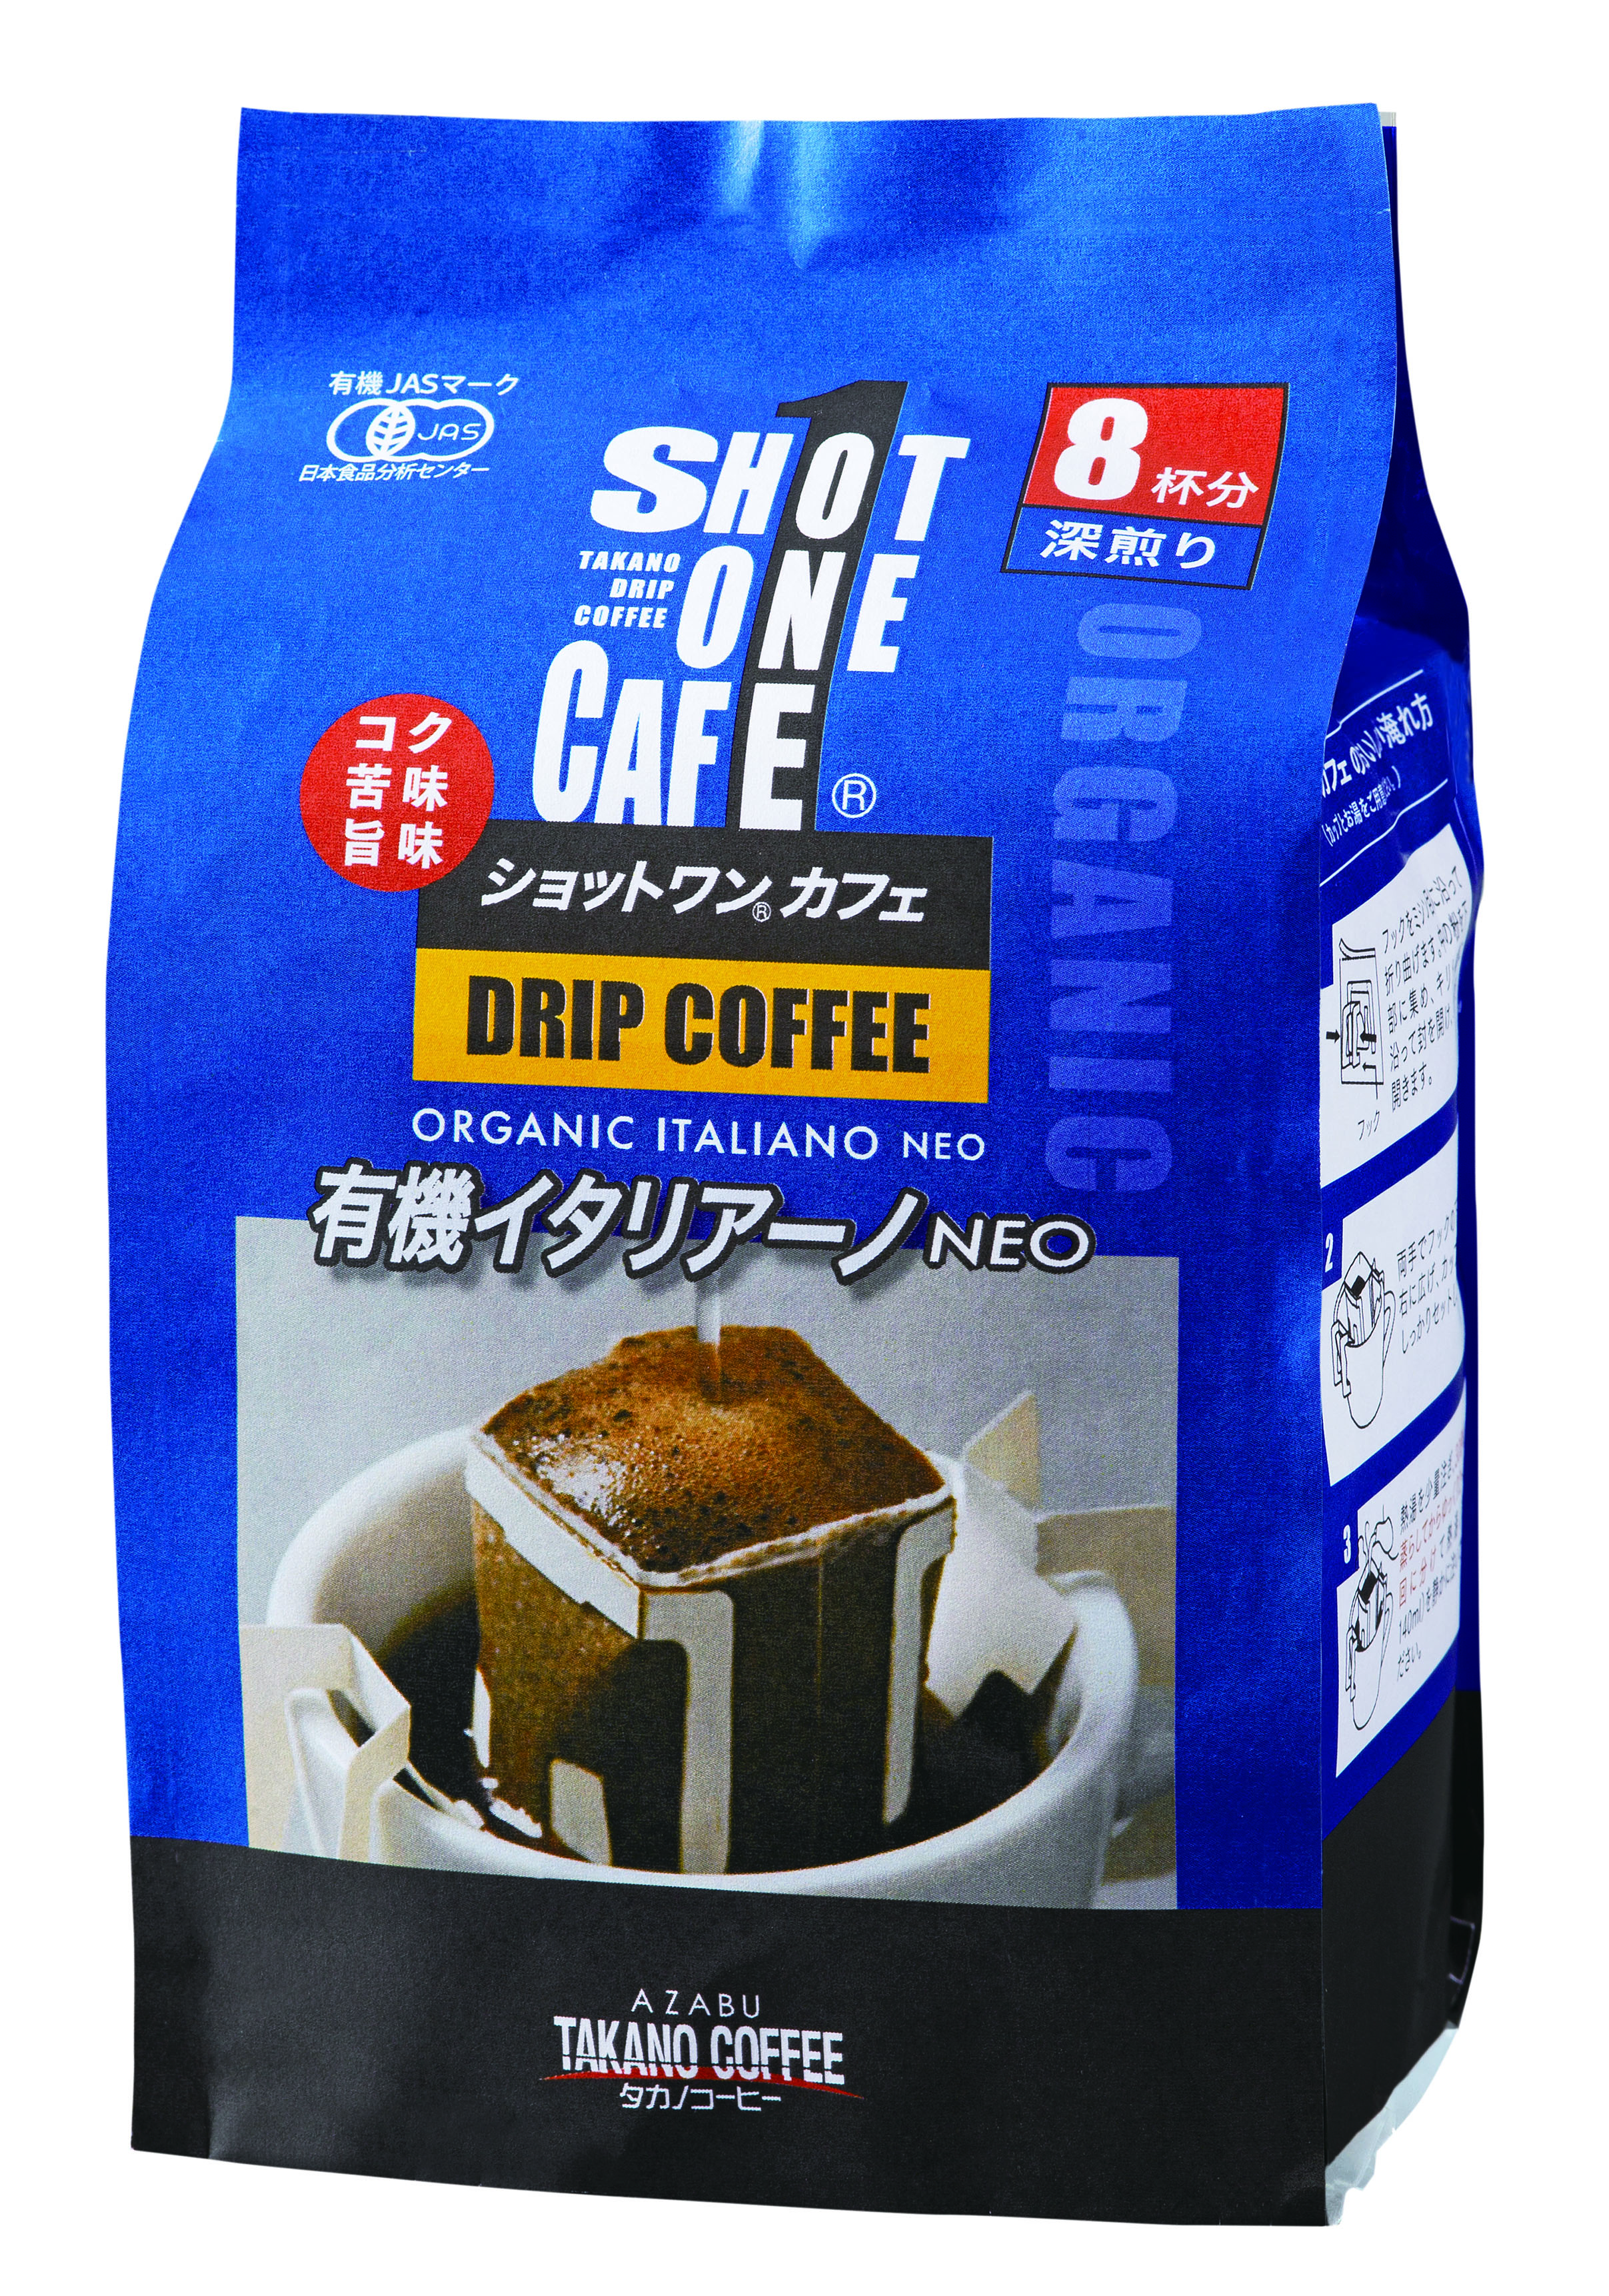 ショットワンカフェ 有機イタリアーノ/10杯分(深煎り)【タカノコーヒー】